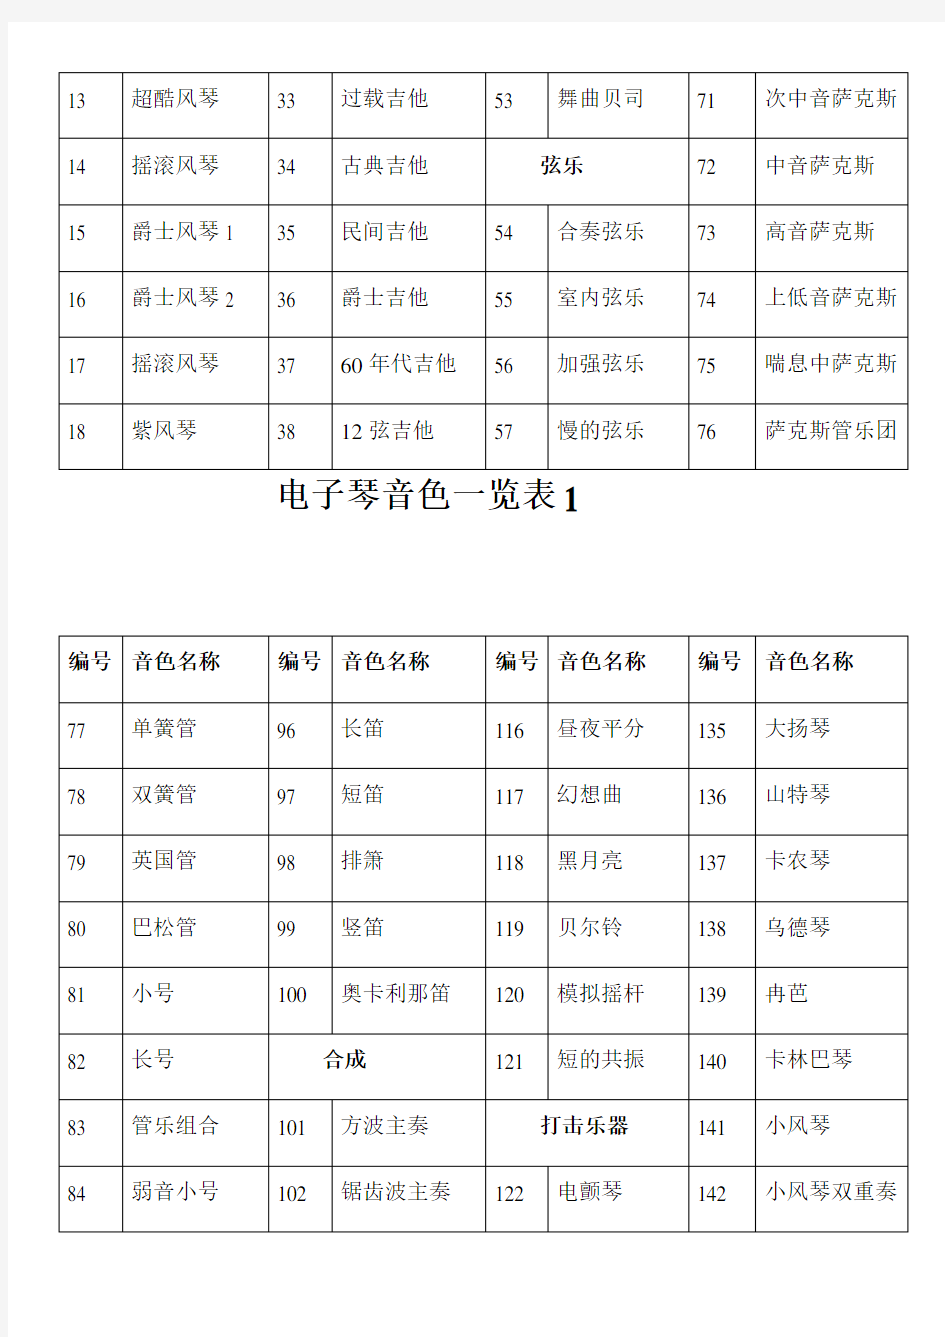 雅马哈psre电子琴音色中文一览表